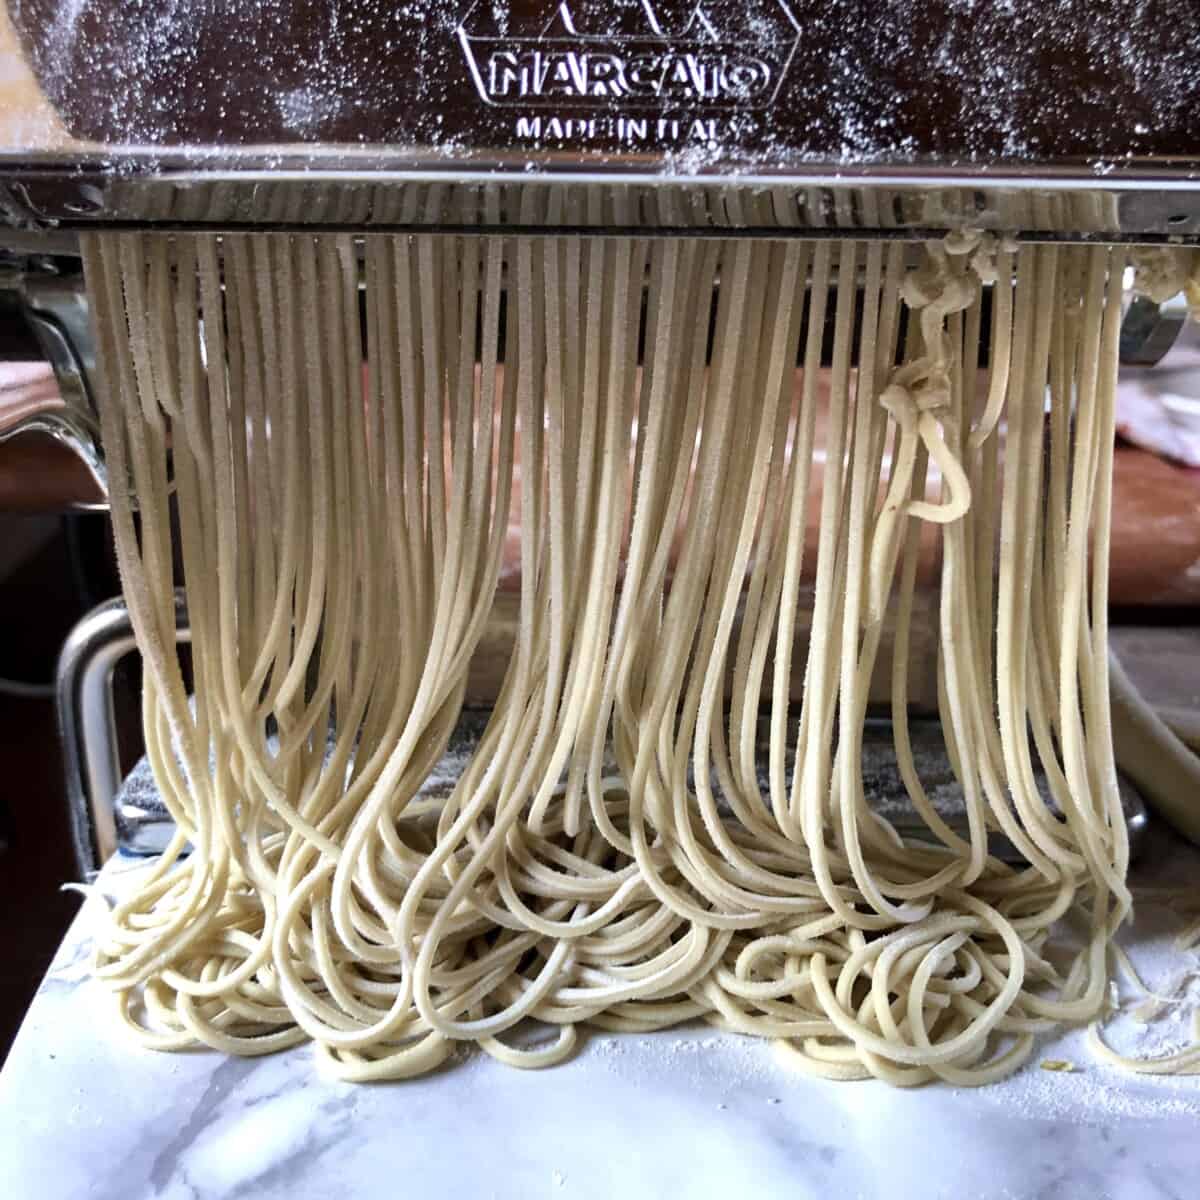 homemade alkaline ramen noodles being cut using a pasta machine